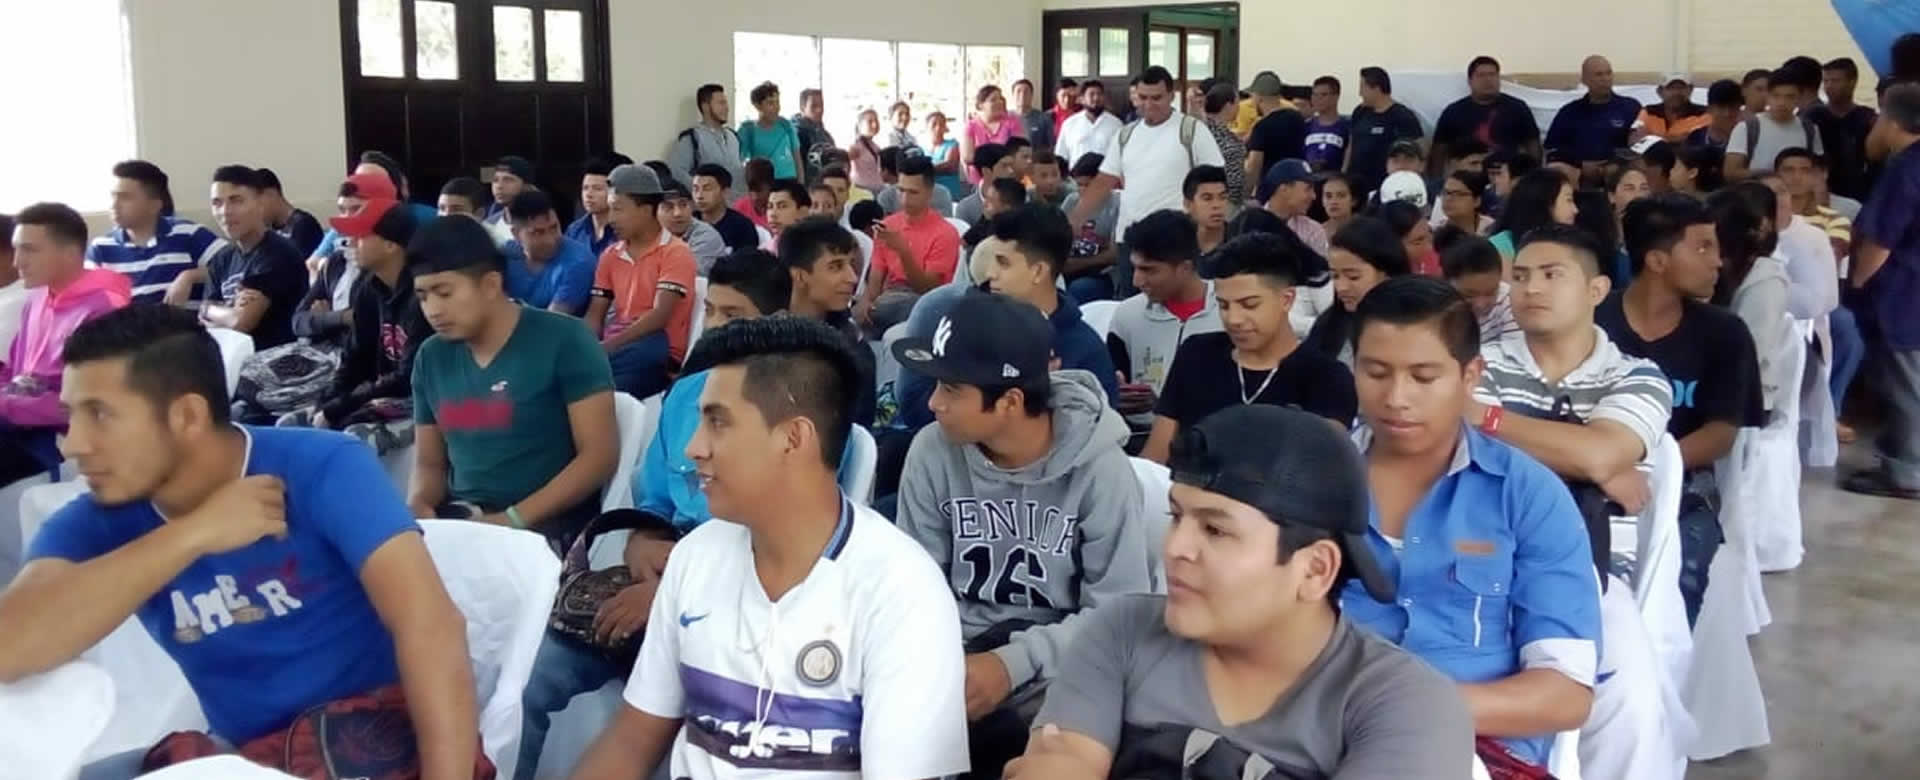 Estudiantes del Centro Tecnológico "Ernesth Thalman" en Jinotepe asistieron con normalidad a la apertura del Segundo Semestre 2018